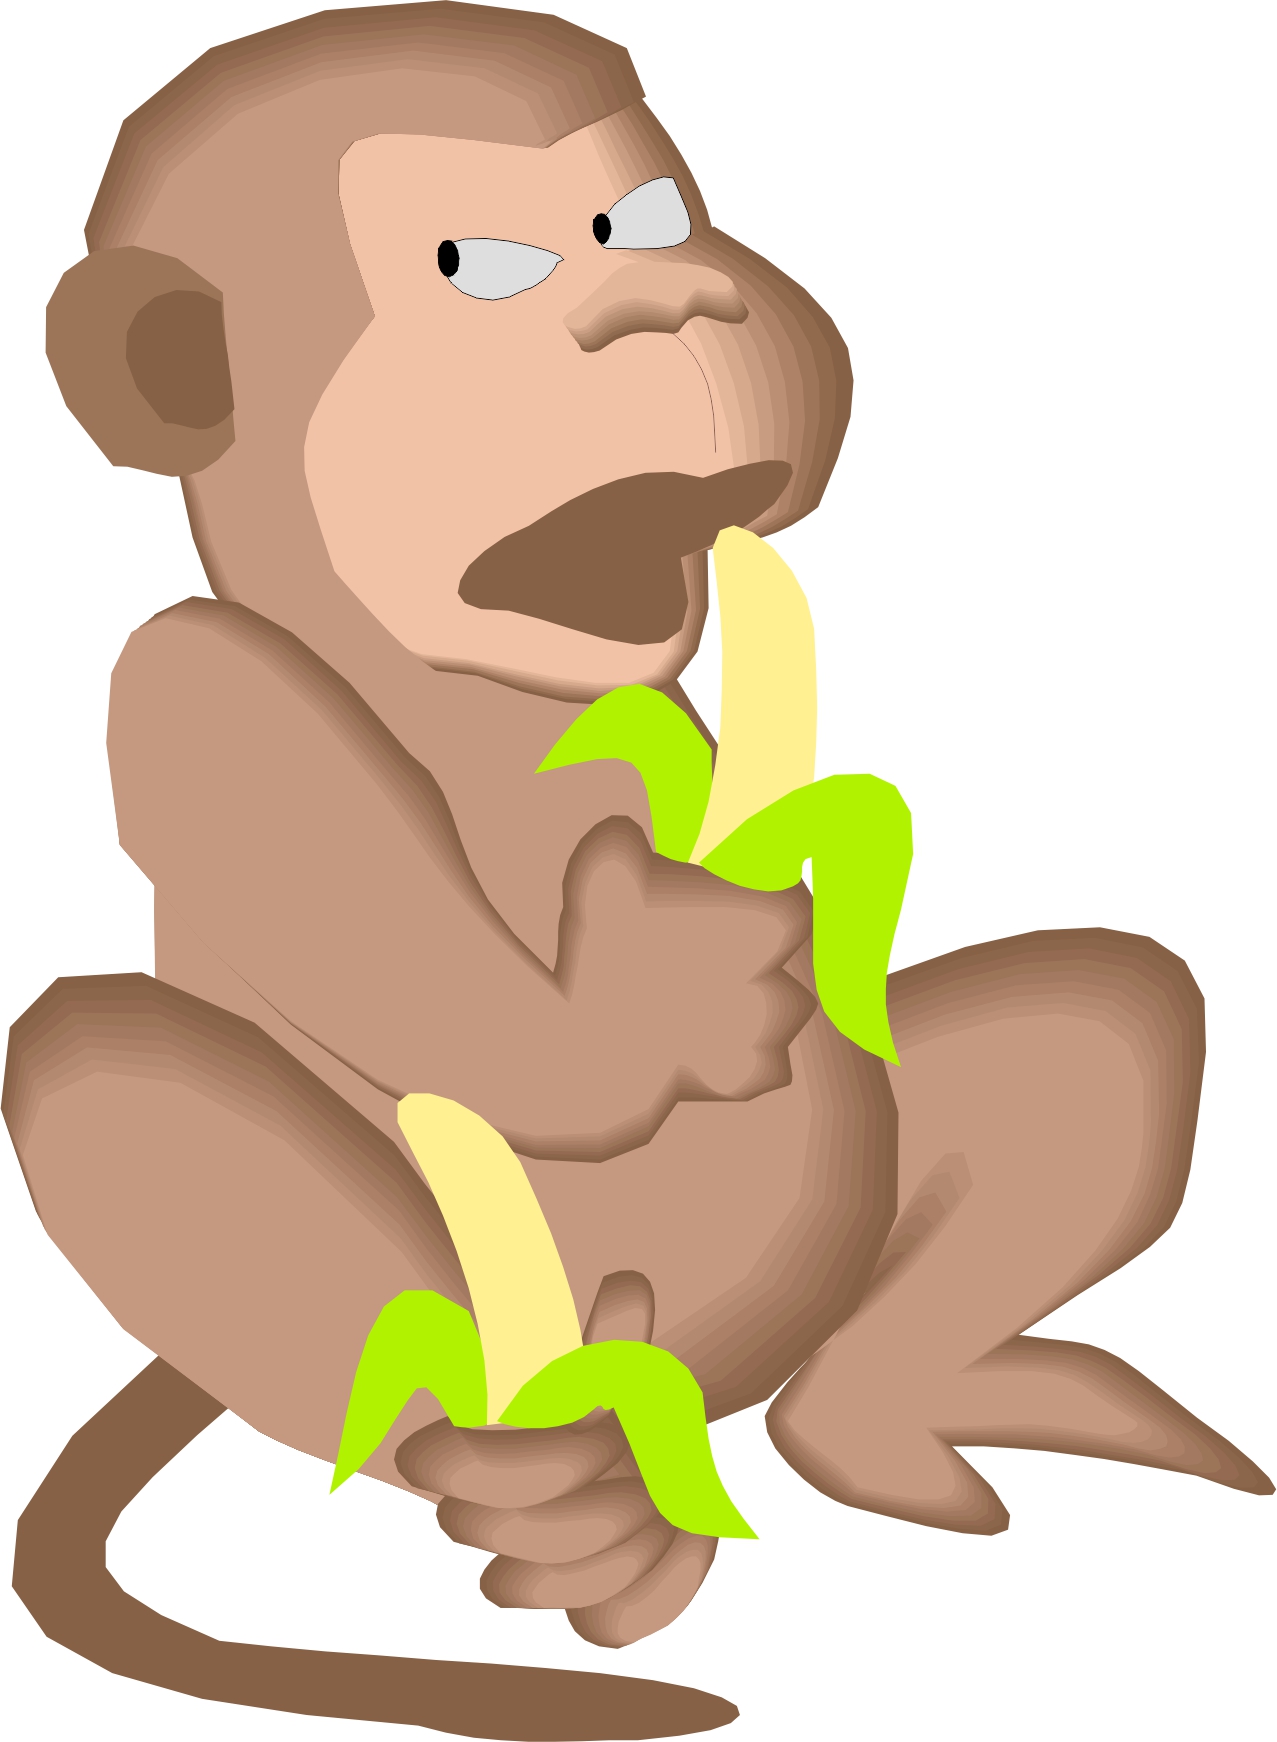 Monkey Eating Banana - ClipArt Best